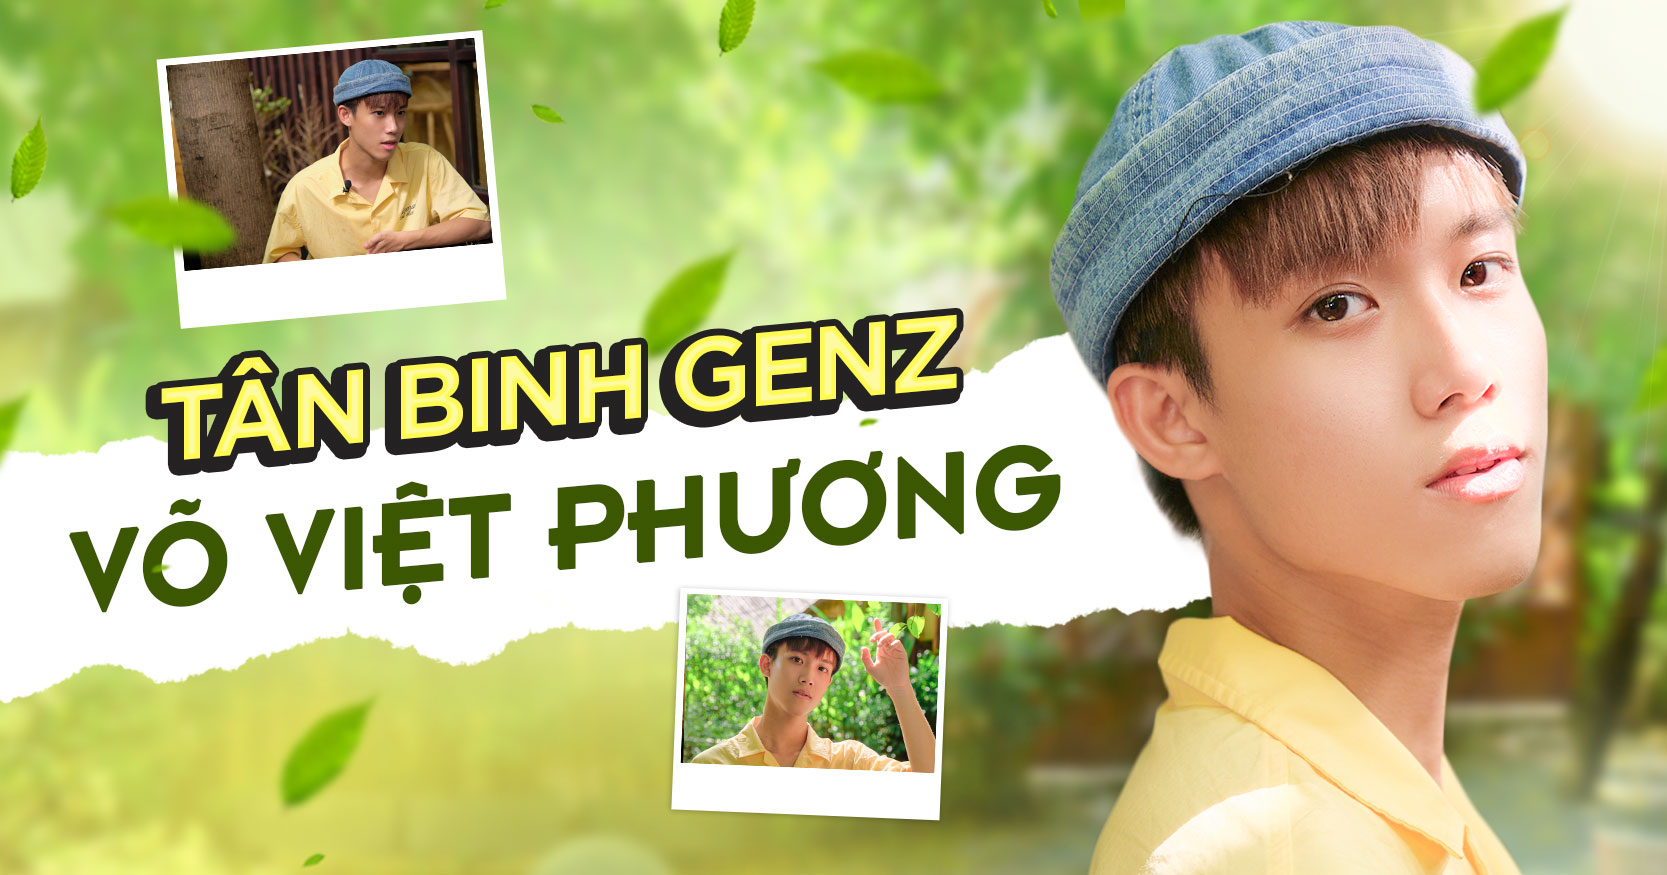 Tân binh GenZ Võ Việt Phương trải lòng về "âm nhạc mạo hiểm" và tin đồn "rich kid Sài thành"